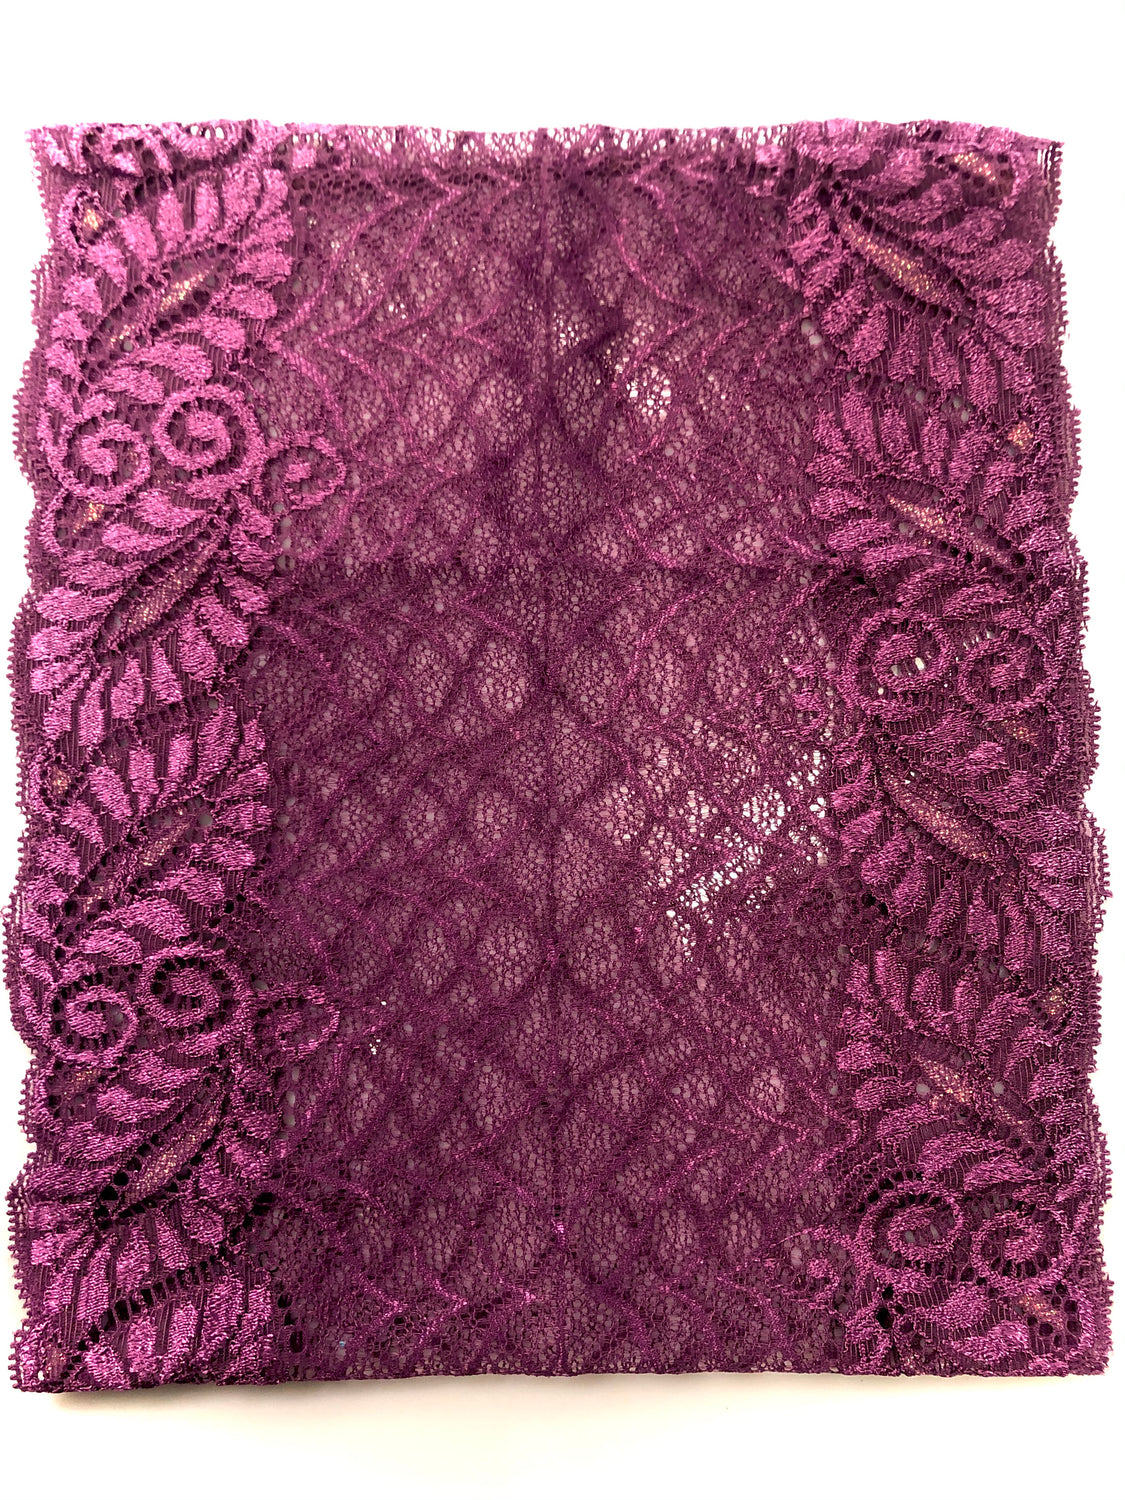 violet purple lace undercap scarf bonnet for hijab